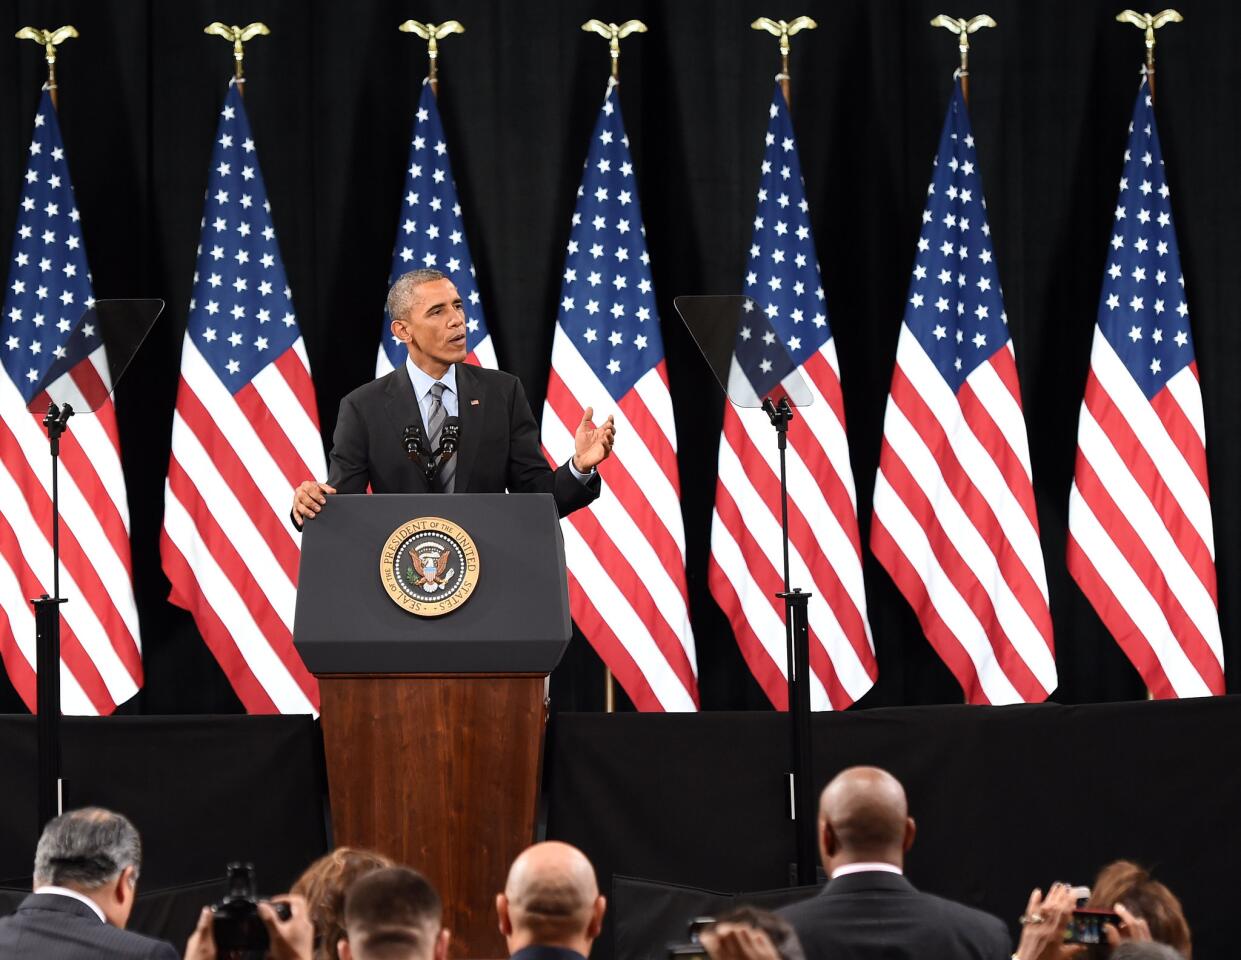 Obama discusses immigration plan in Las Vegas